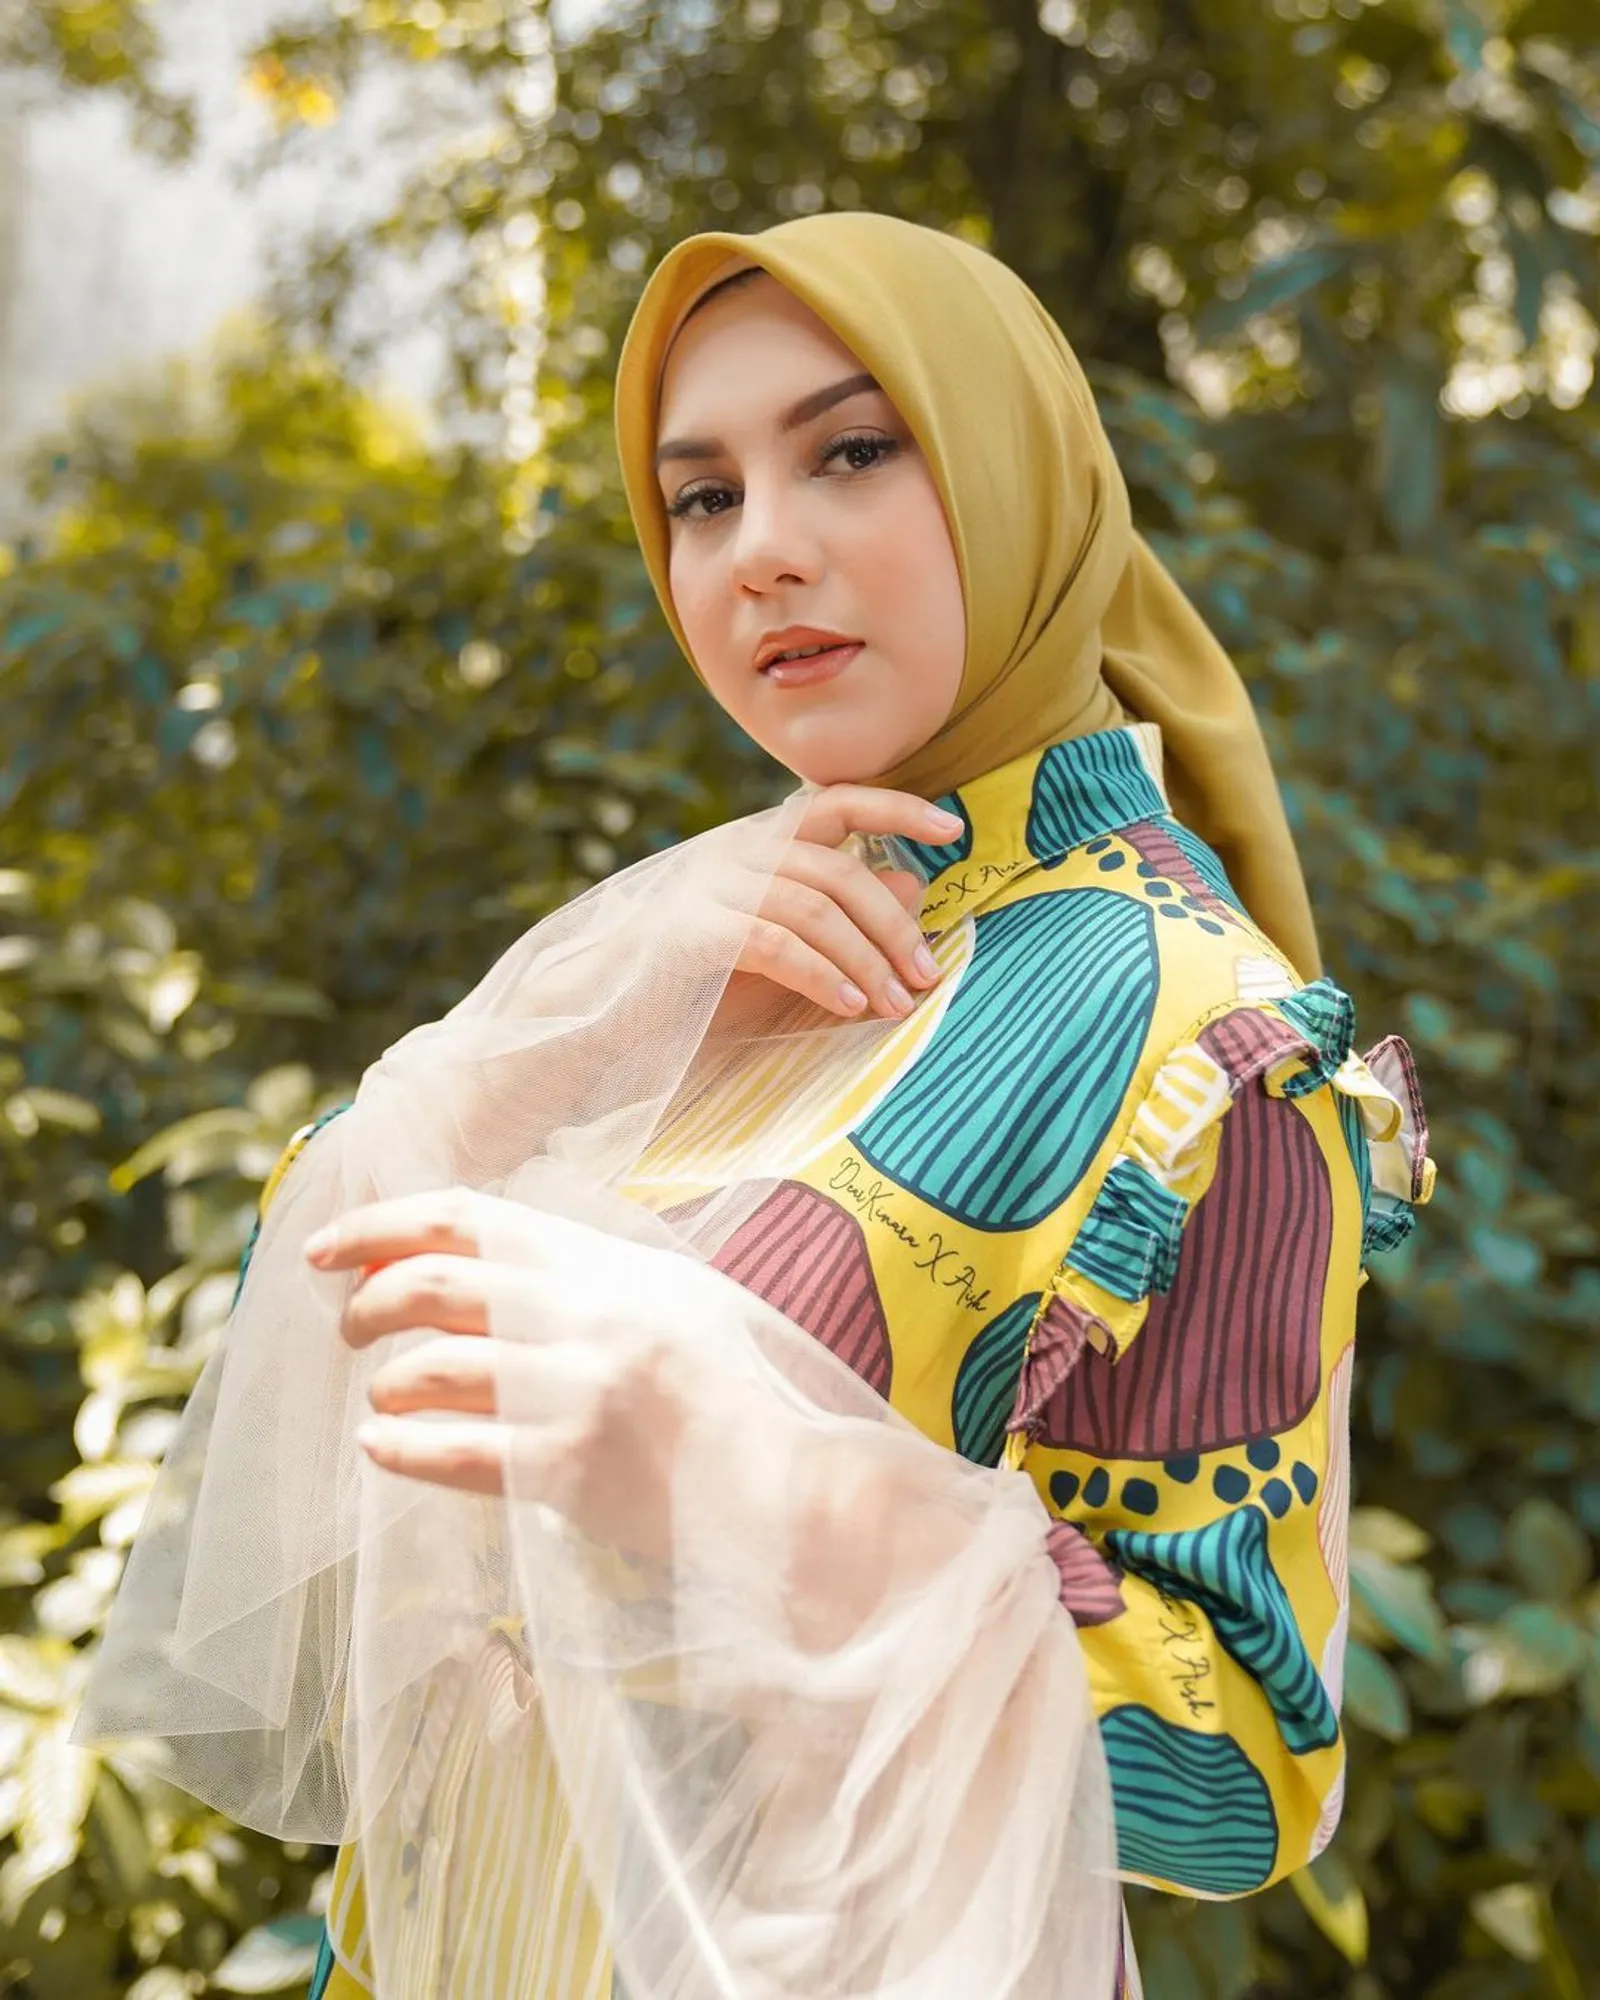 Gaya Artis Indonesia Blasteran yang Ternyata Seorang Muslim